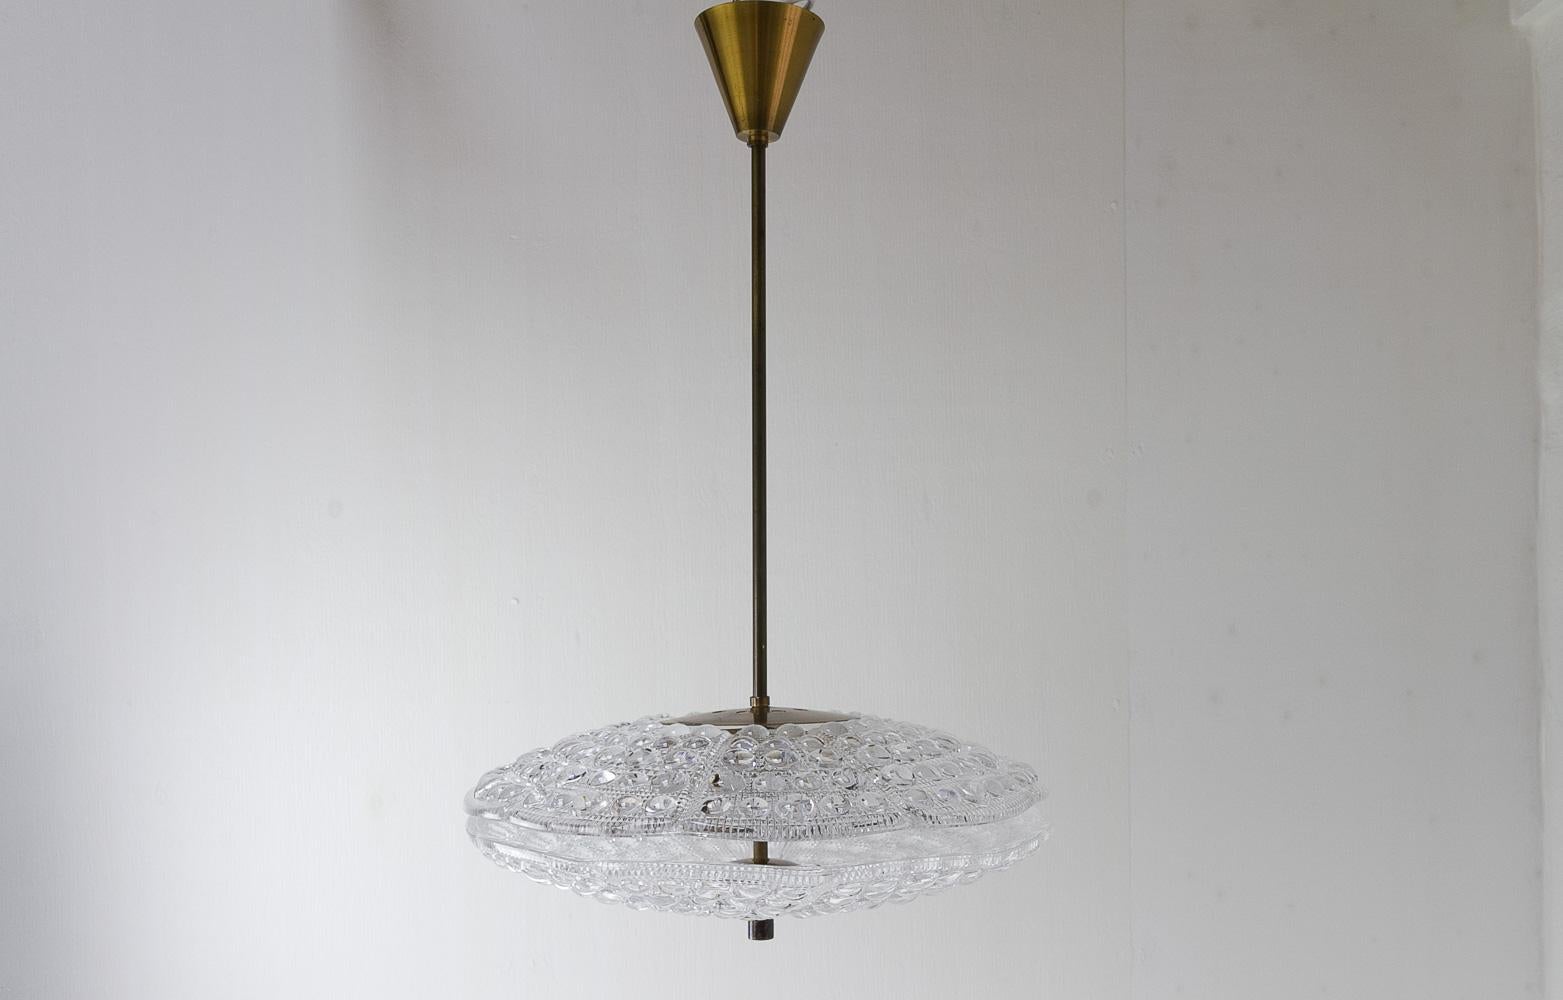 Orrefors Crystal and Brass Ceiling Pendelleuchte von Fagerlund für Lyfa, 1960er Jahre.
Skandinavischer Mid-Century Modern Kronleuchter aus Messing und Kristallglas. Hergestellt von Lyfa Denmark, entworfen von Carl Fagerlund, und die beiden dicken,